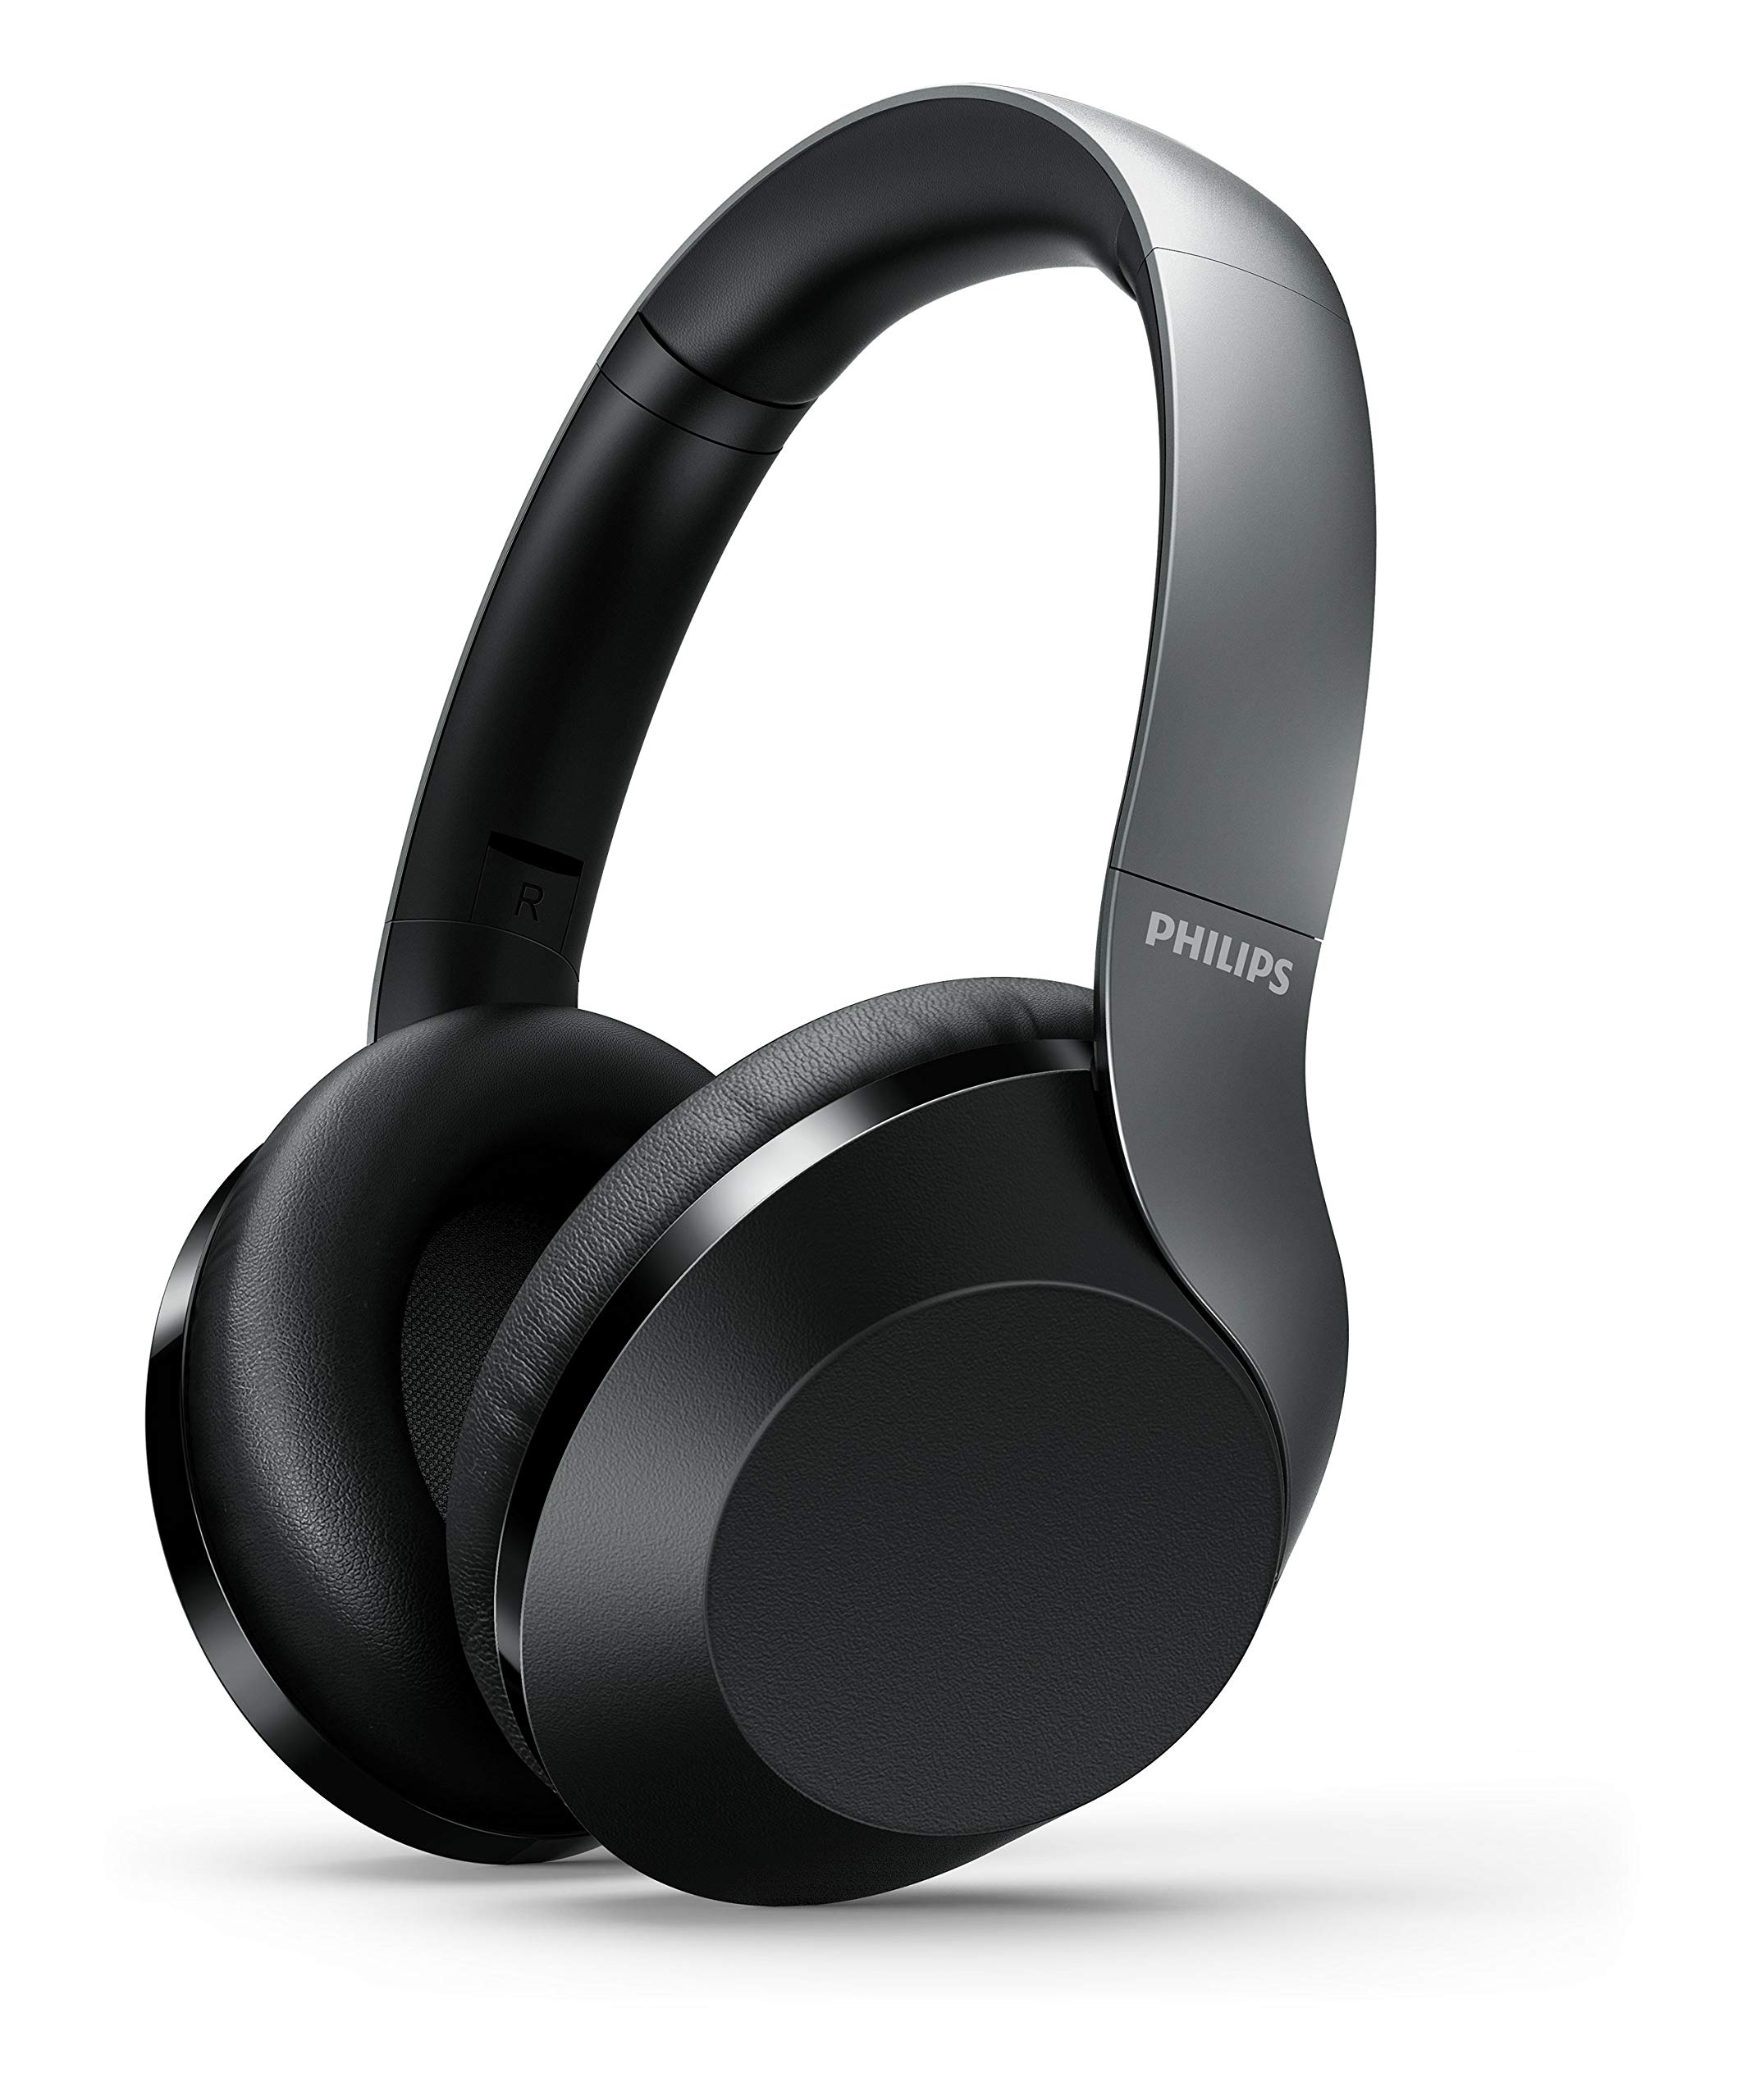 Philips Audio Performance TAPH805BK Bluetooth 5.0 Over-Ear-Kopfhörer mit aktiver Geräuschunterdrückung und Google Assistant (Schwarz)